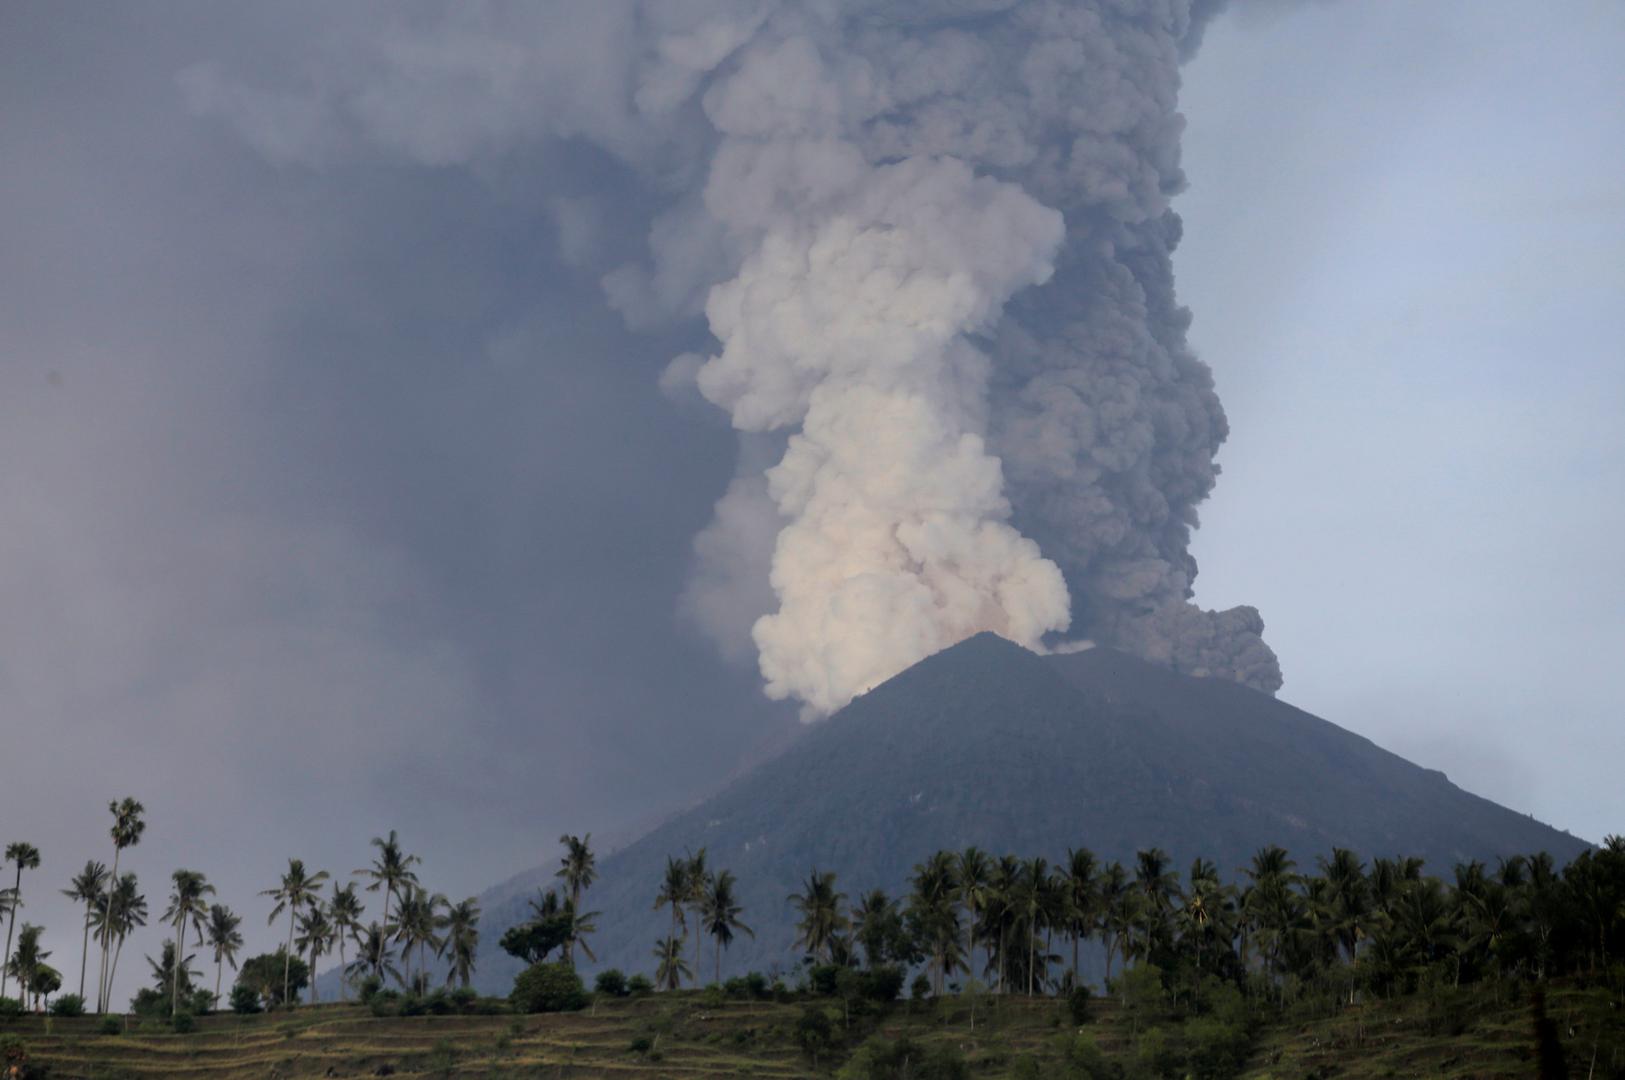 Vulkan Agung u čijoj je erupciji 1963. godine poginulo 1600 osoba ispuštao je danas stup sivog dima gotovo 4000 metara u zrak.